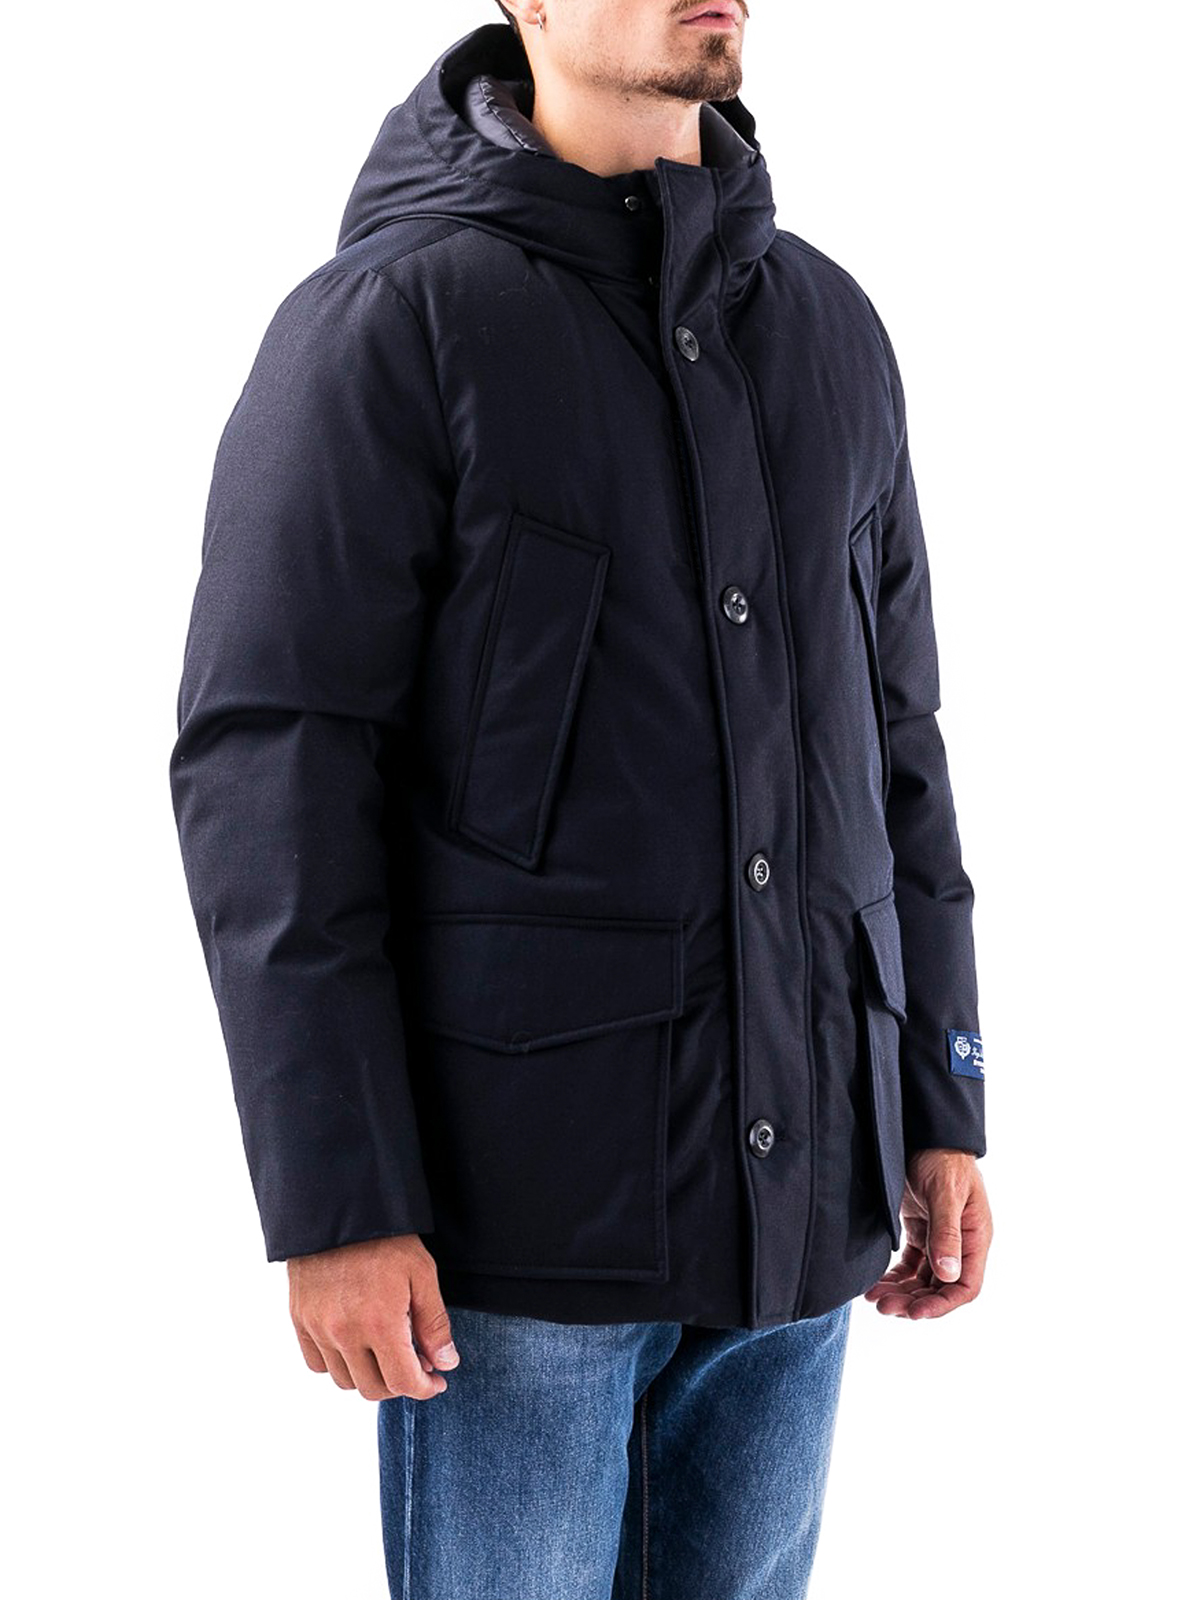 jackets Woolrich - Padded Field jacket - CFWOOU0267MRUT23473989